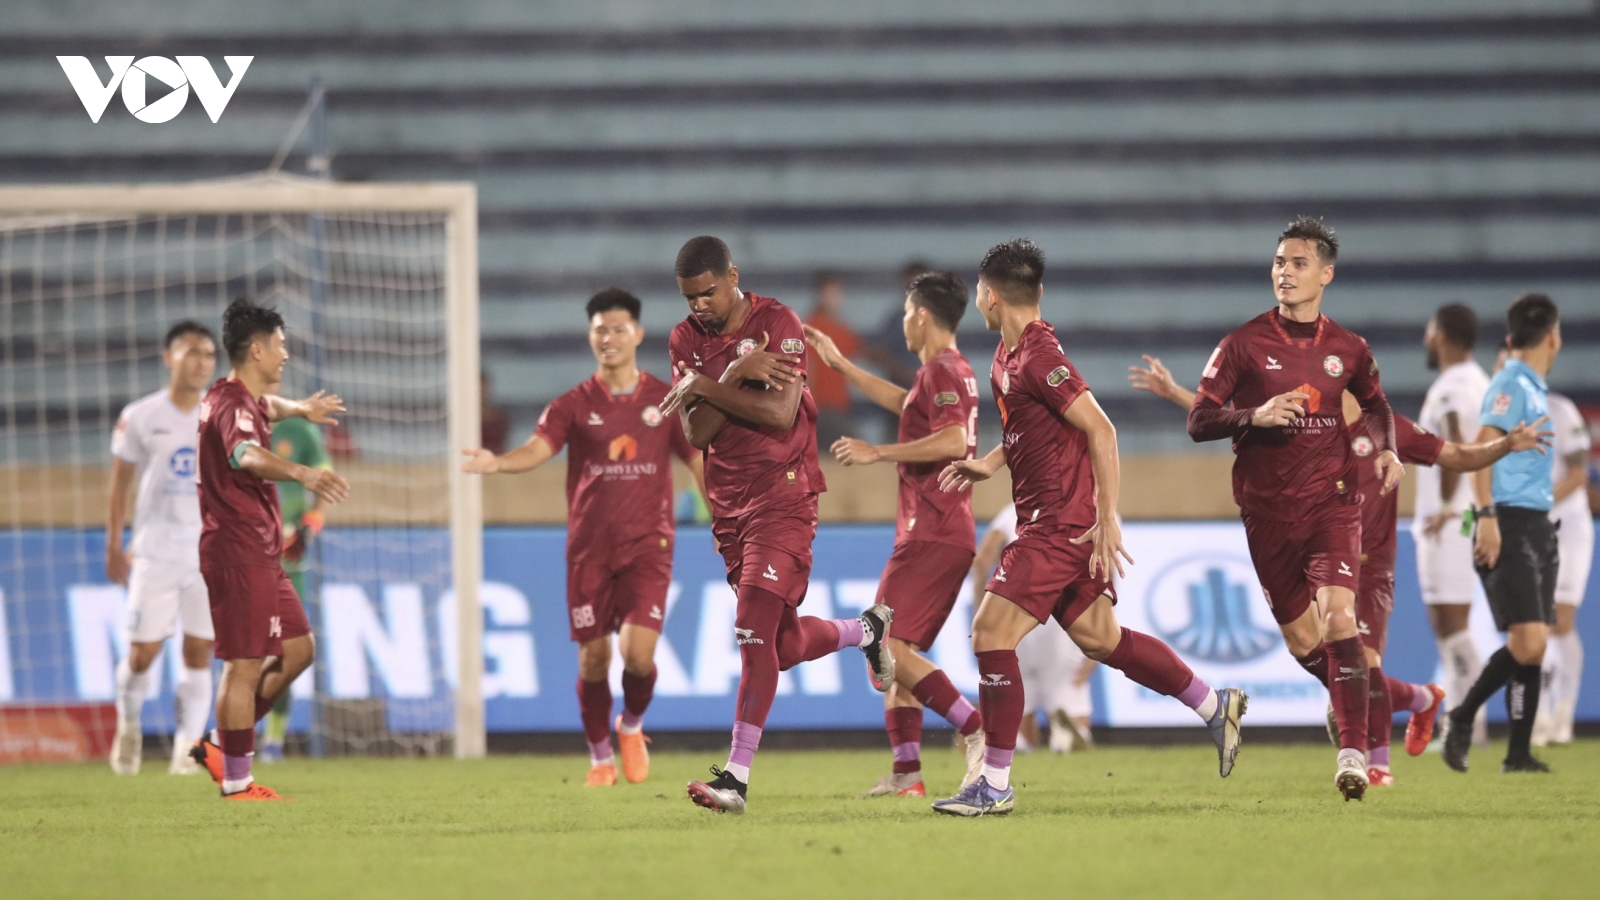 Kết quả V-League: Bình Định thắng Nam Định sau màn rượt đuổi tỷ số kịch tính